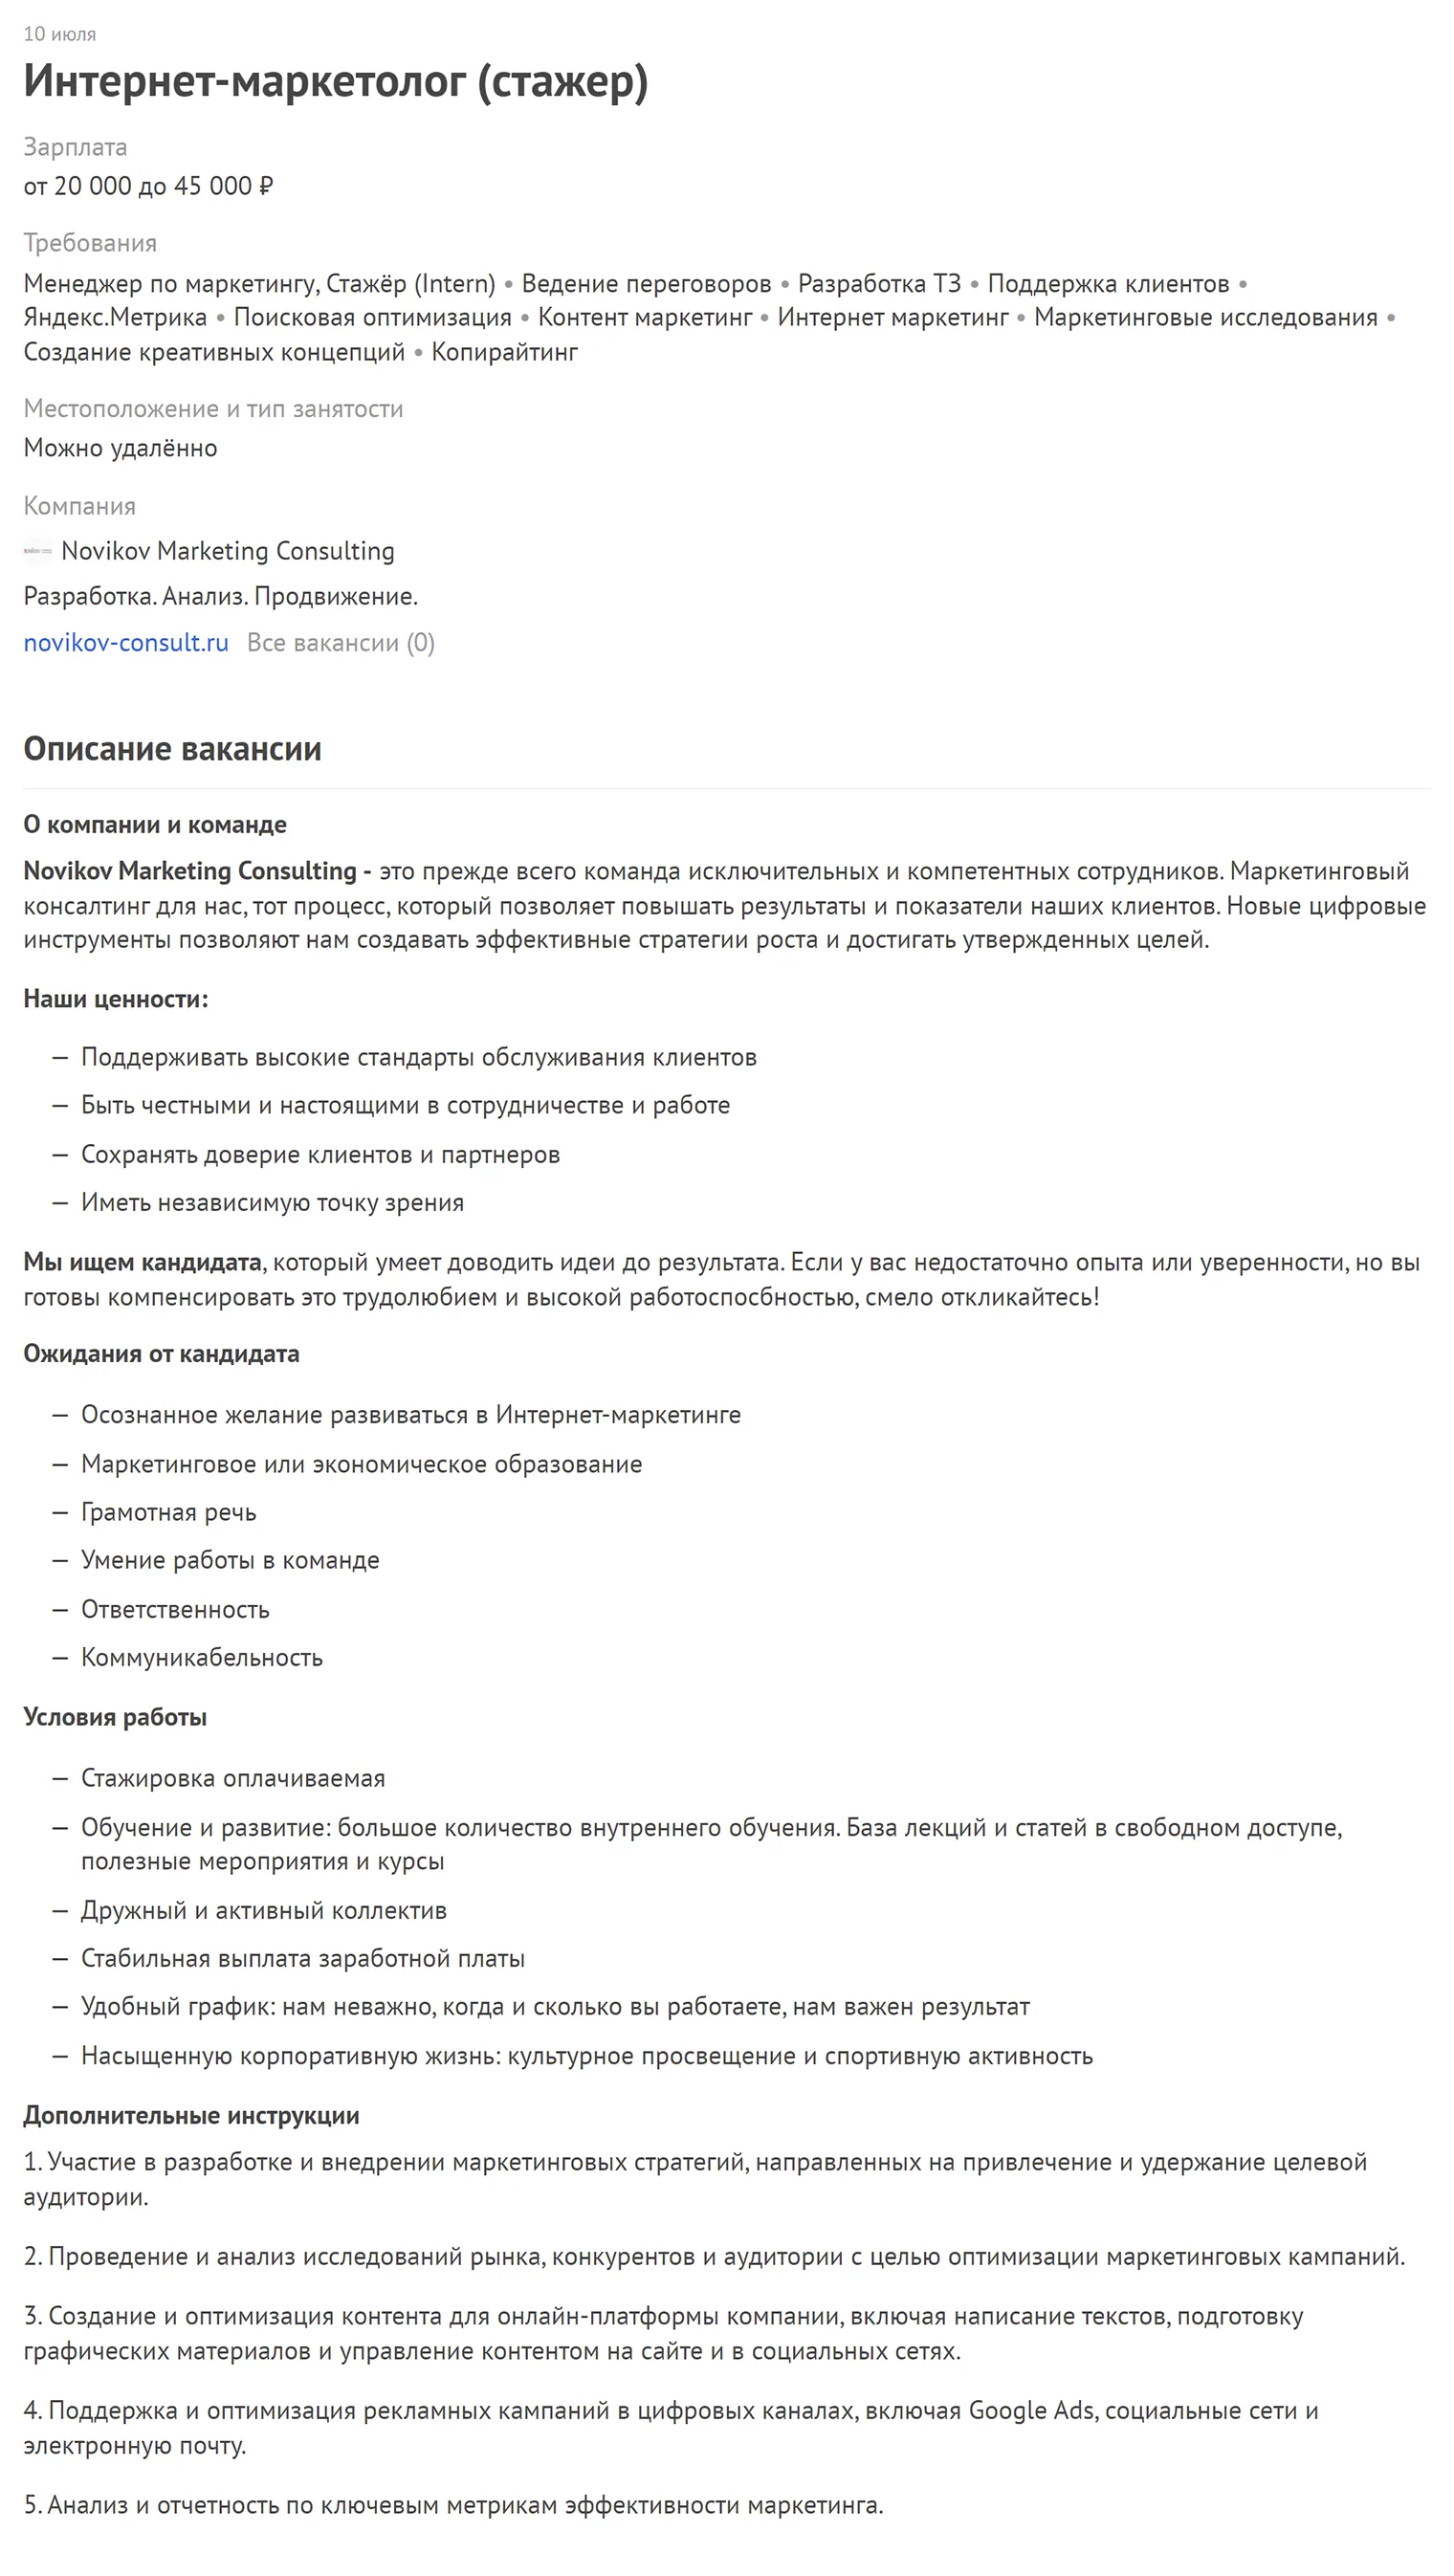 Пример стажерской вакансии от Novikov Marketing Consulting. Источник: career.habr.com